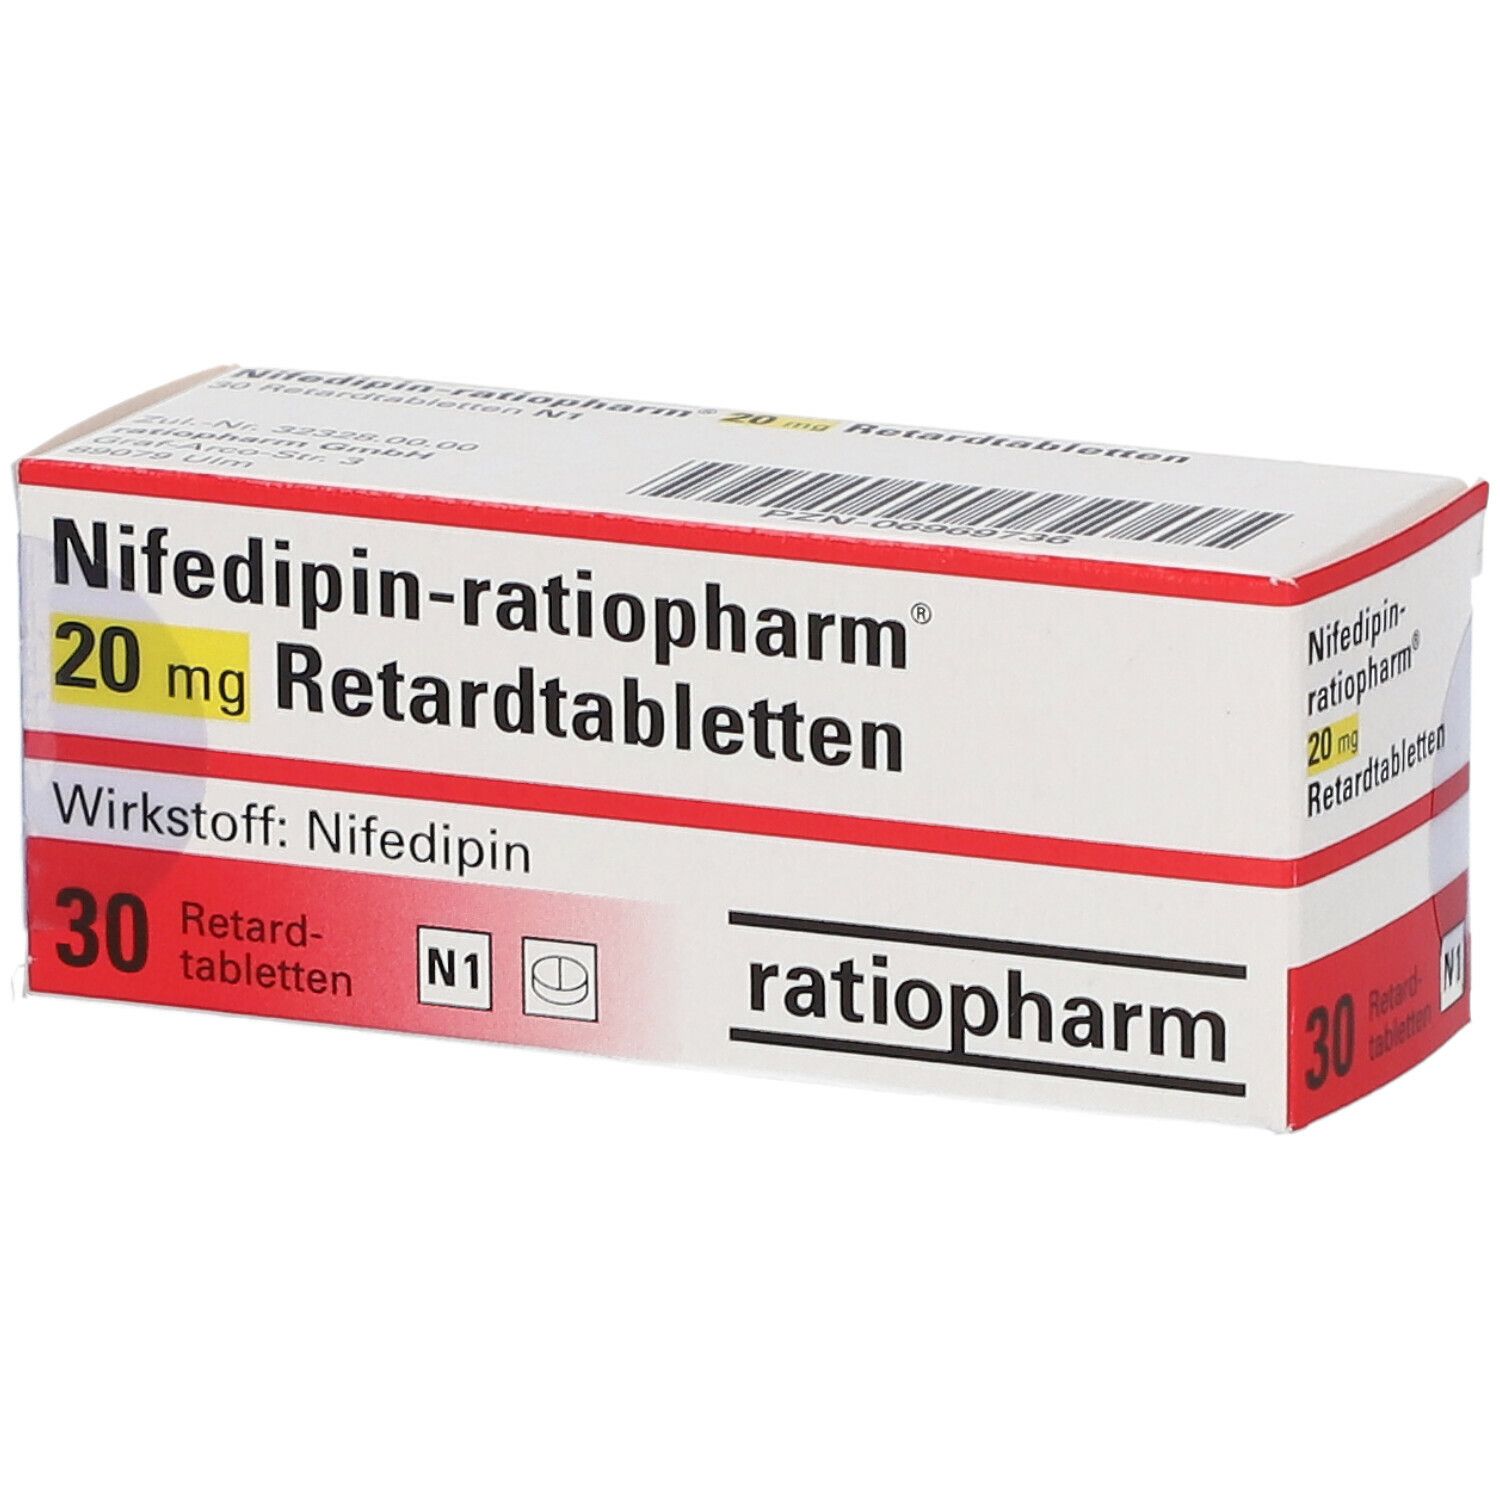 Nifedipin-ratiopharm® 20 mg